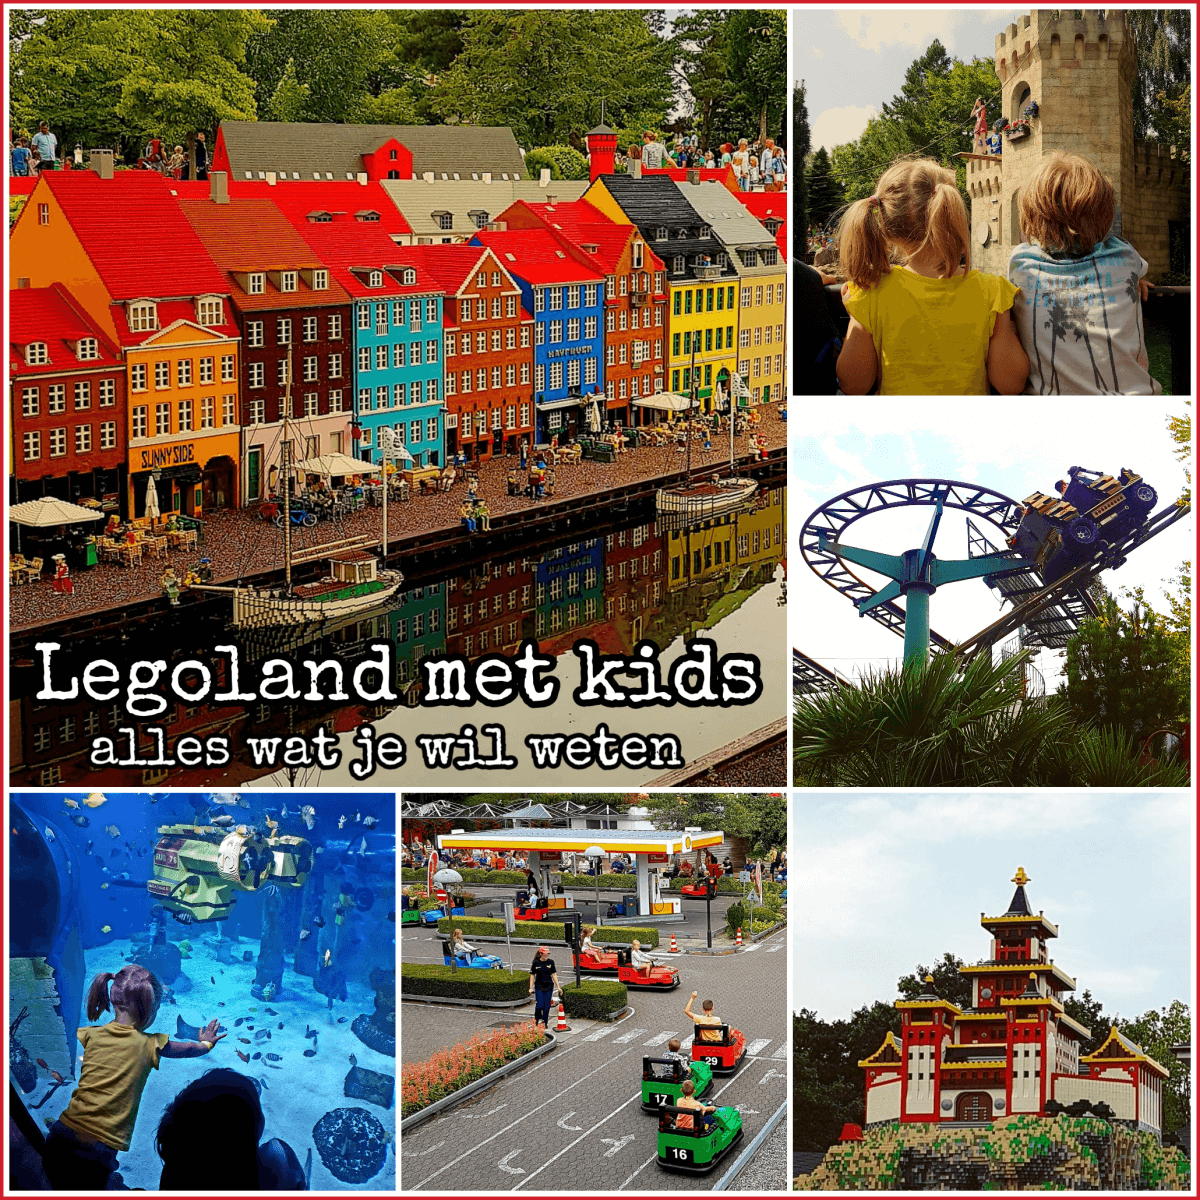 Legoland Billund met kids - alles wat je wil weten #leukmetkids #denemarken